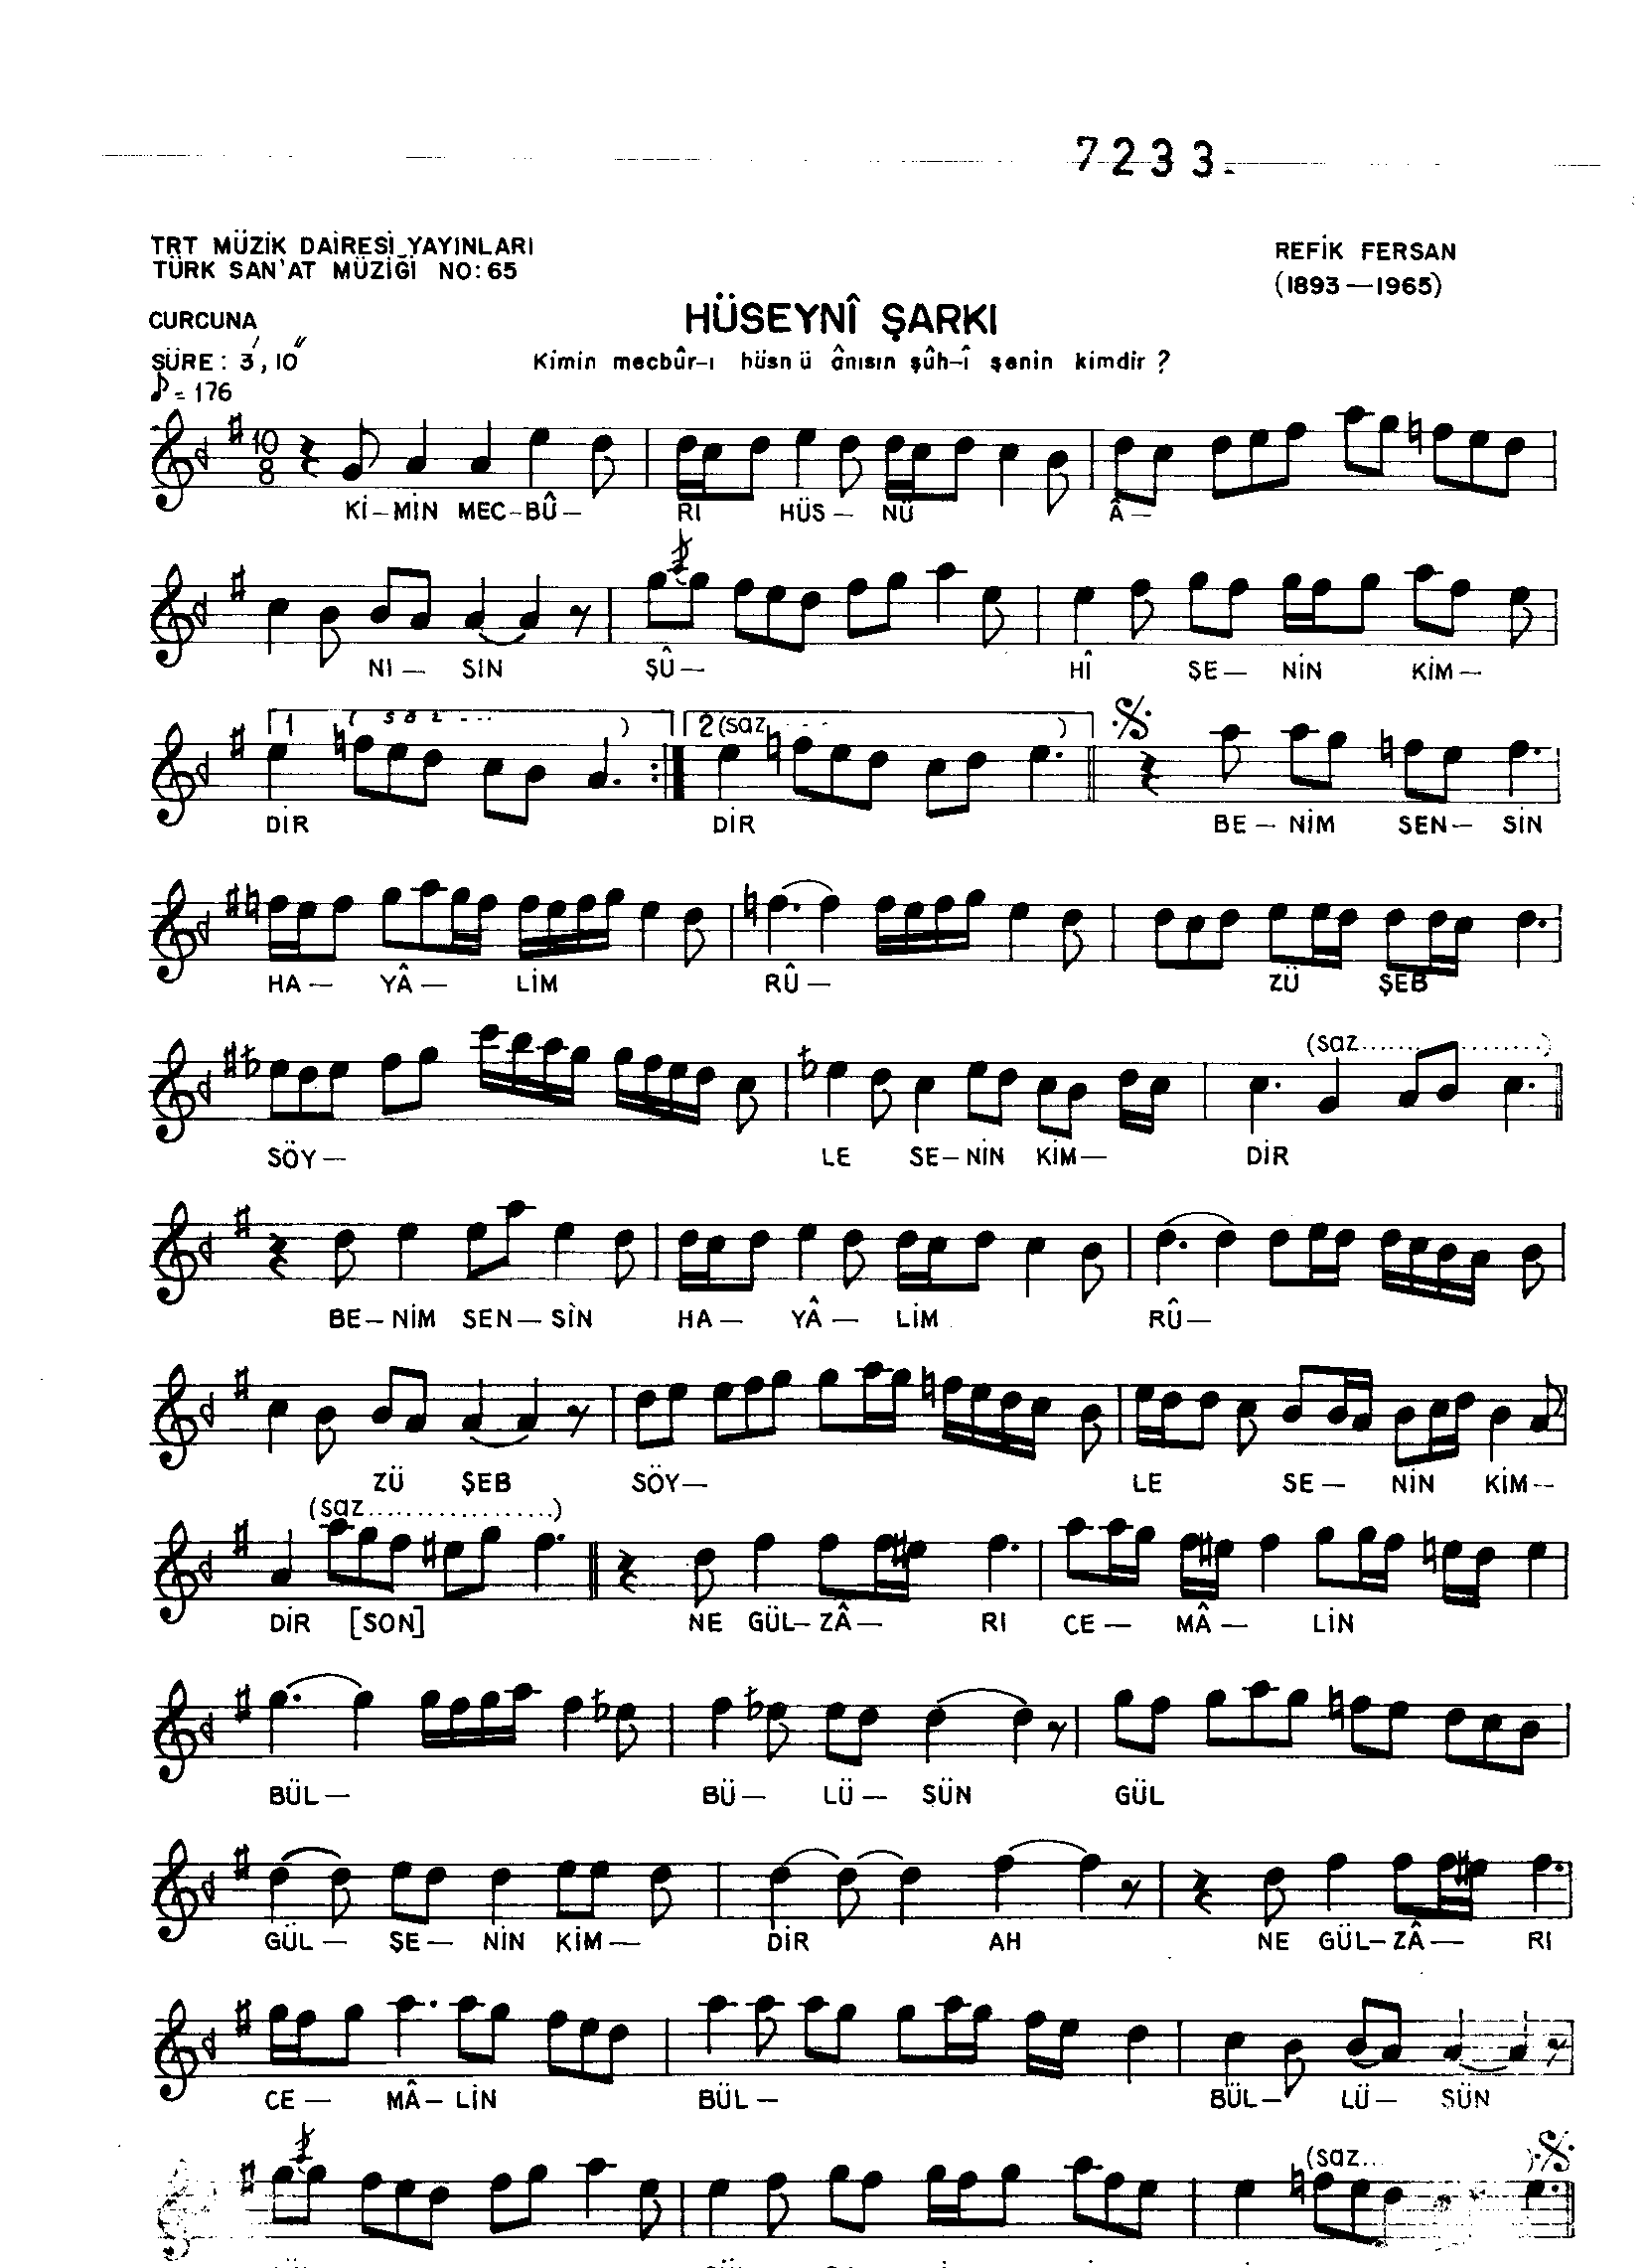 Hüseynî - Şarkı - Refik Fersan - Sayfa 1